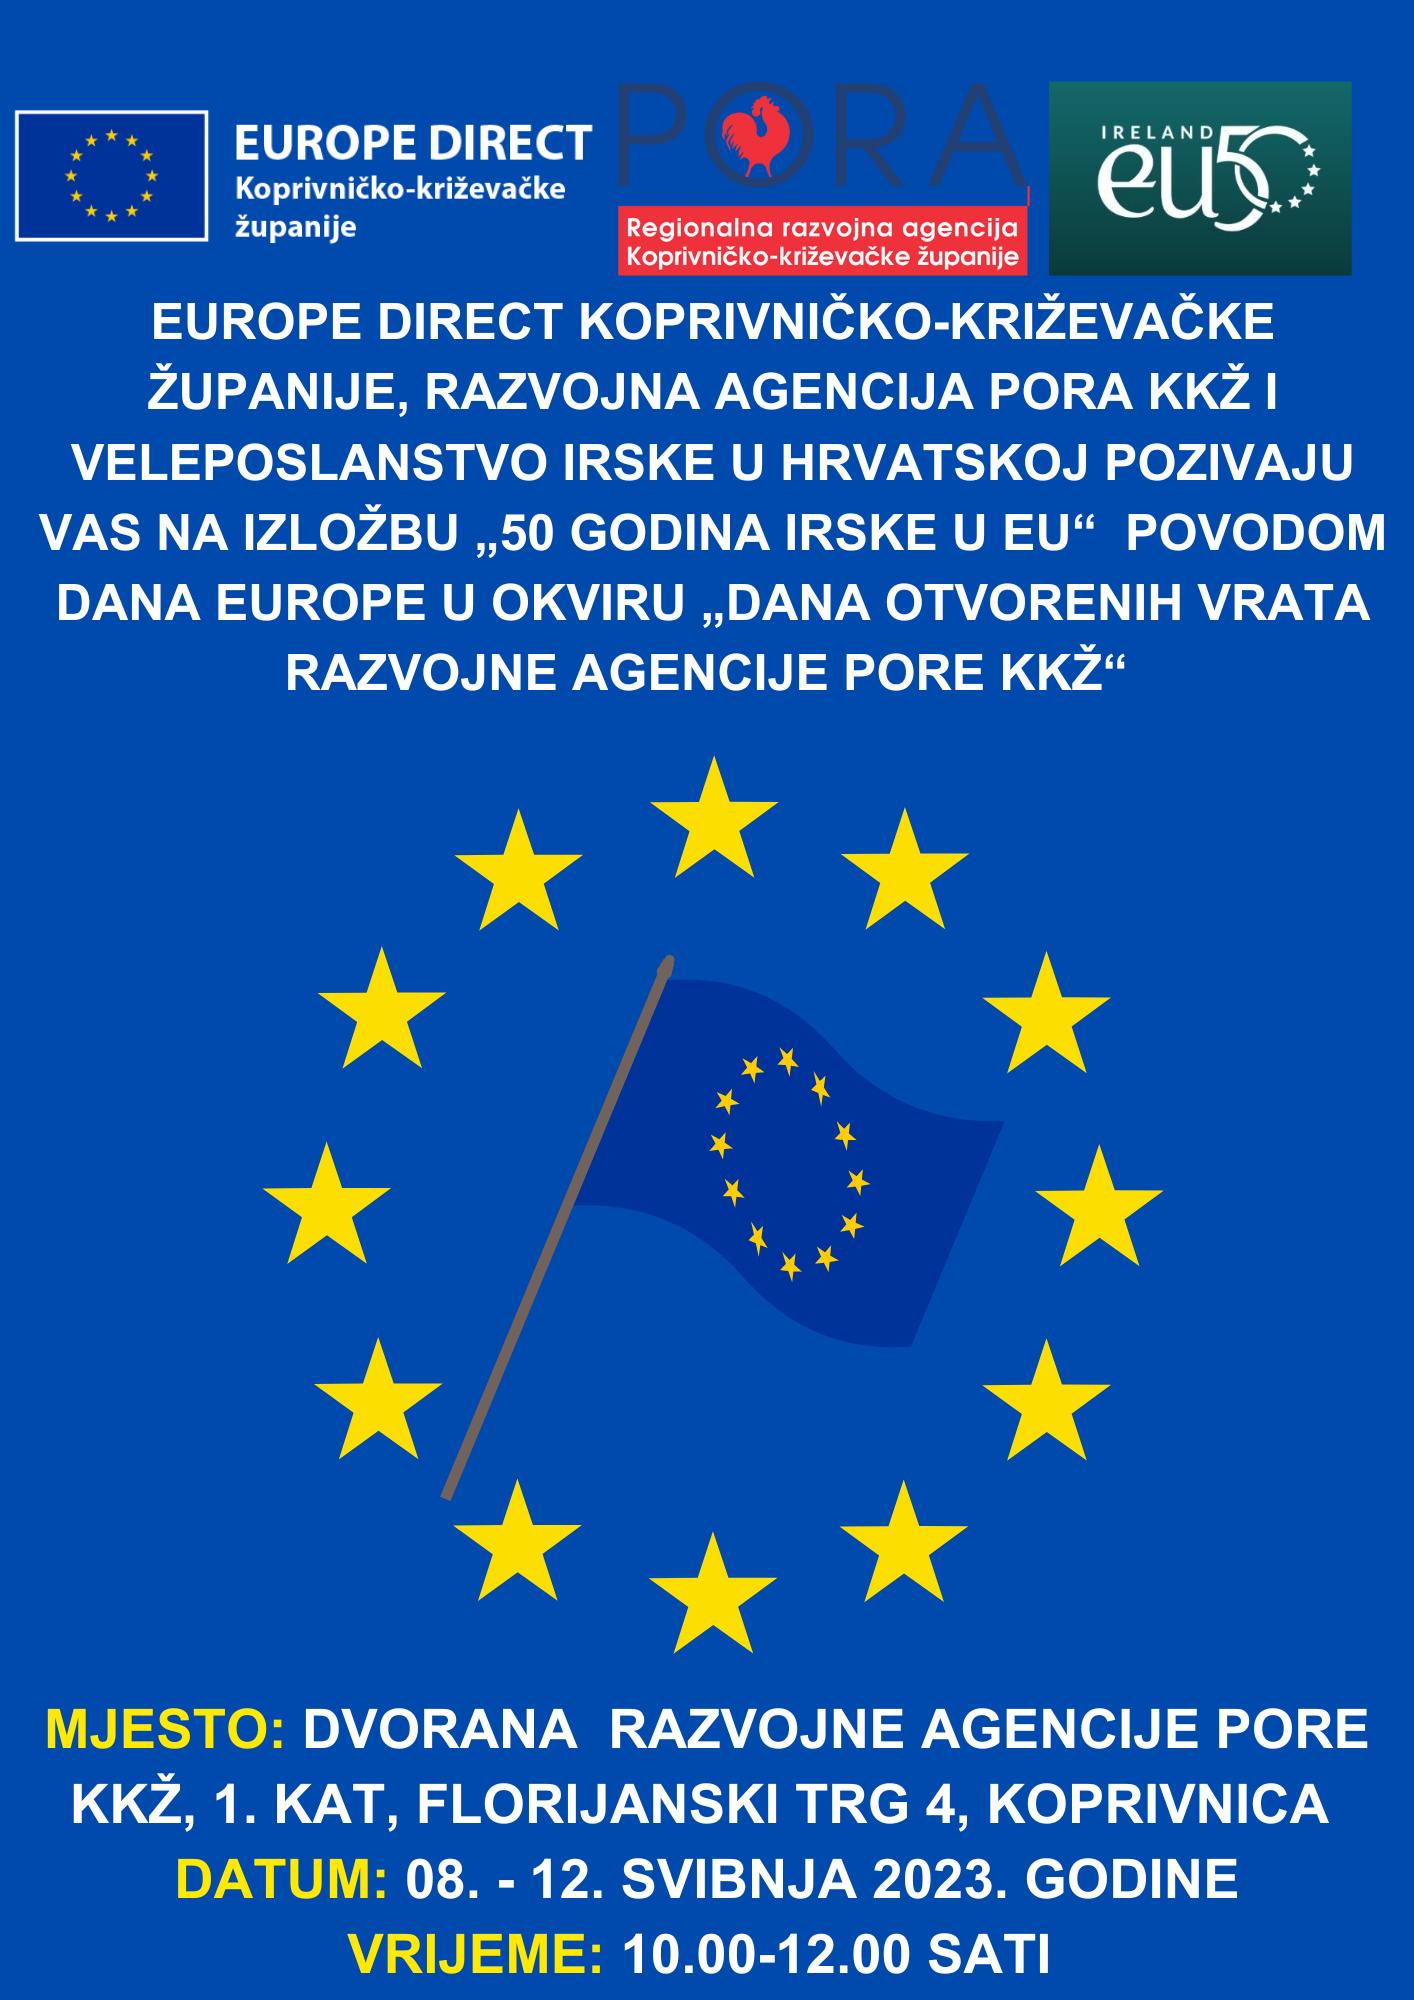 ODRŽAVANJE IZLOŽBE „50 GODINA IRSKE U EU“ POVODOM DANA EUROPE U OKVIRU „DANA OTVORENIH VRATA RAZVOJNE AGENCIJE PORE KKŽ“